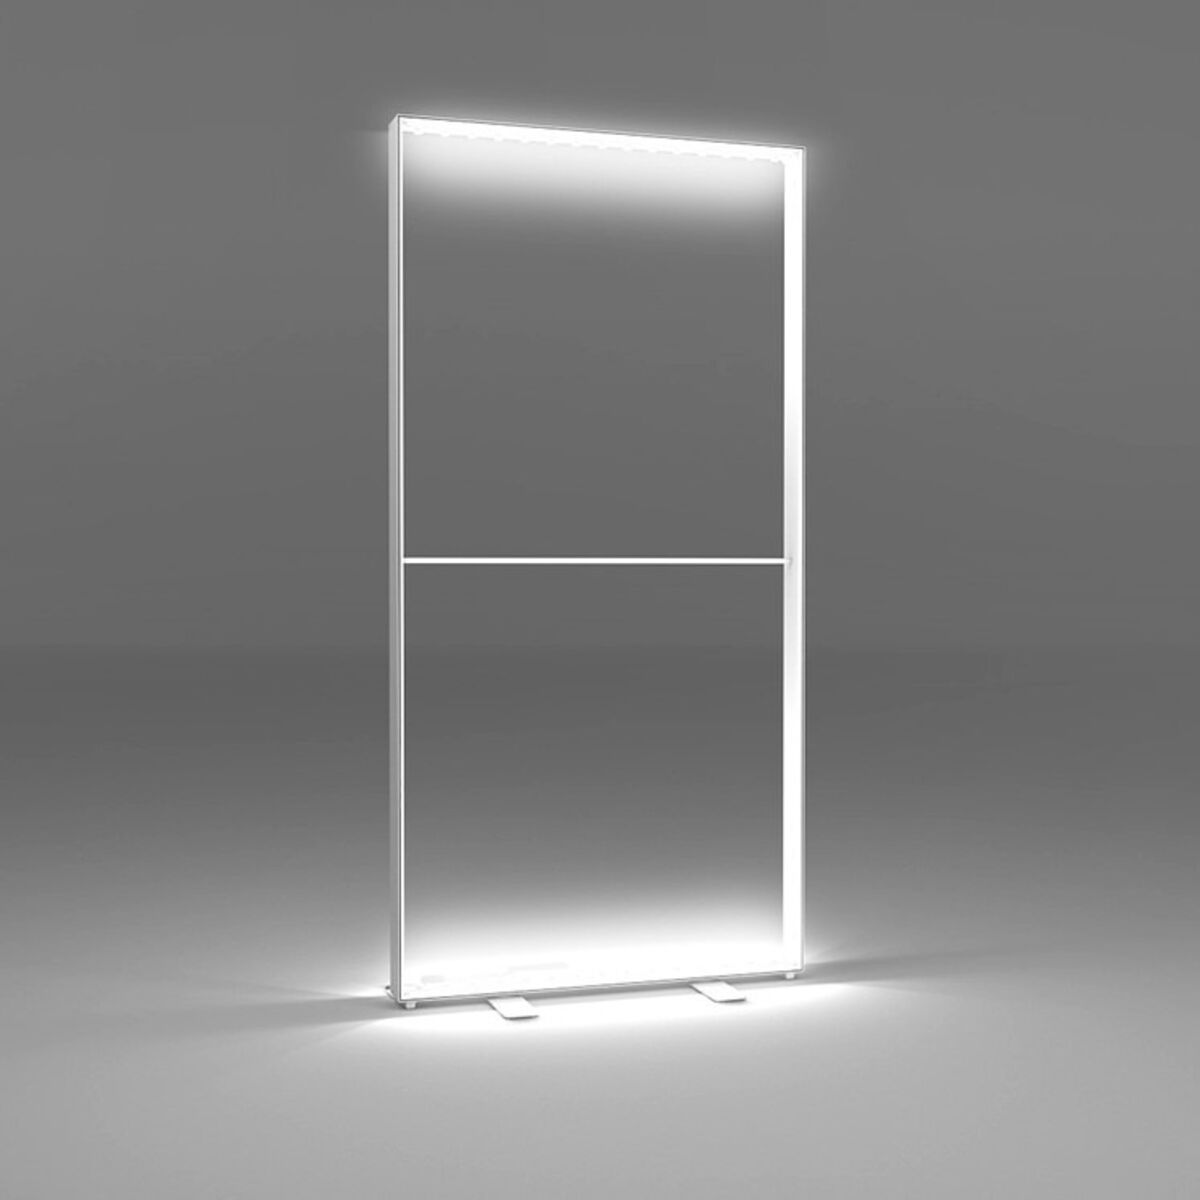 illumiGO-LED-Lightbox-Frame-illuminated-Backdrop.jpg